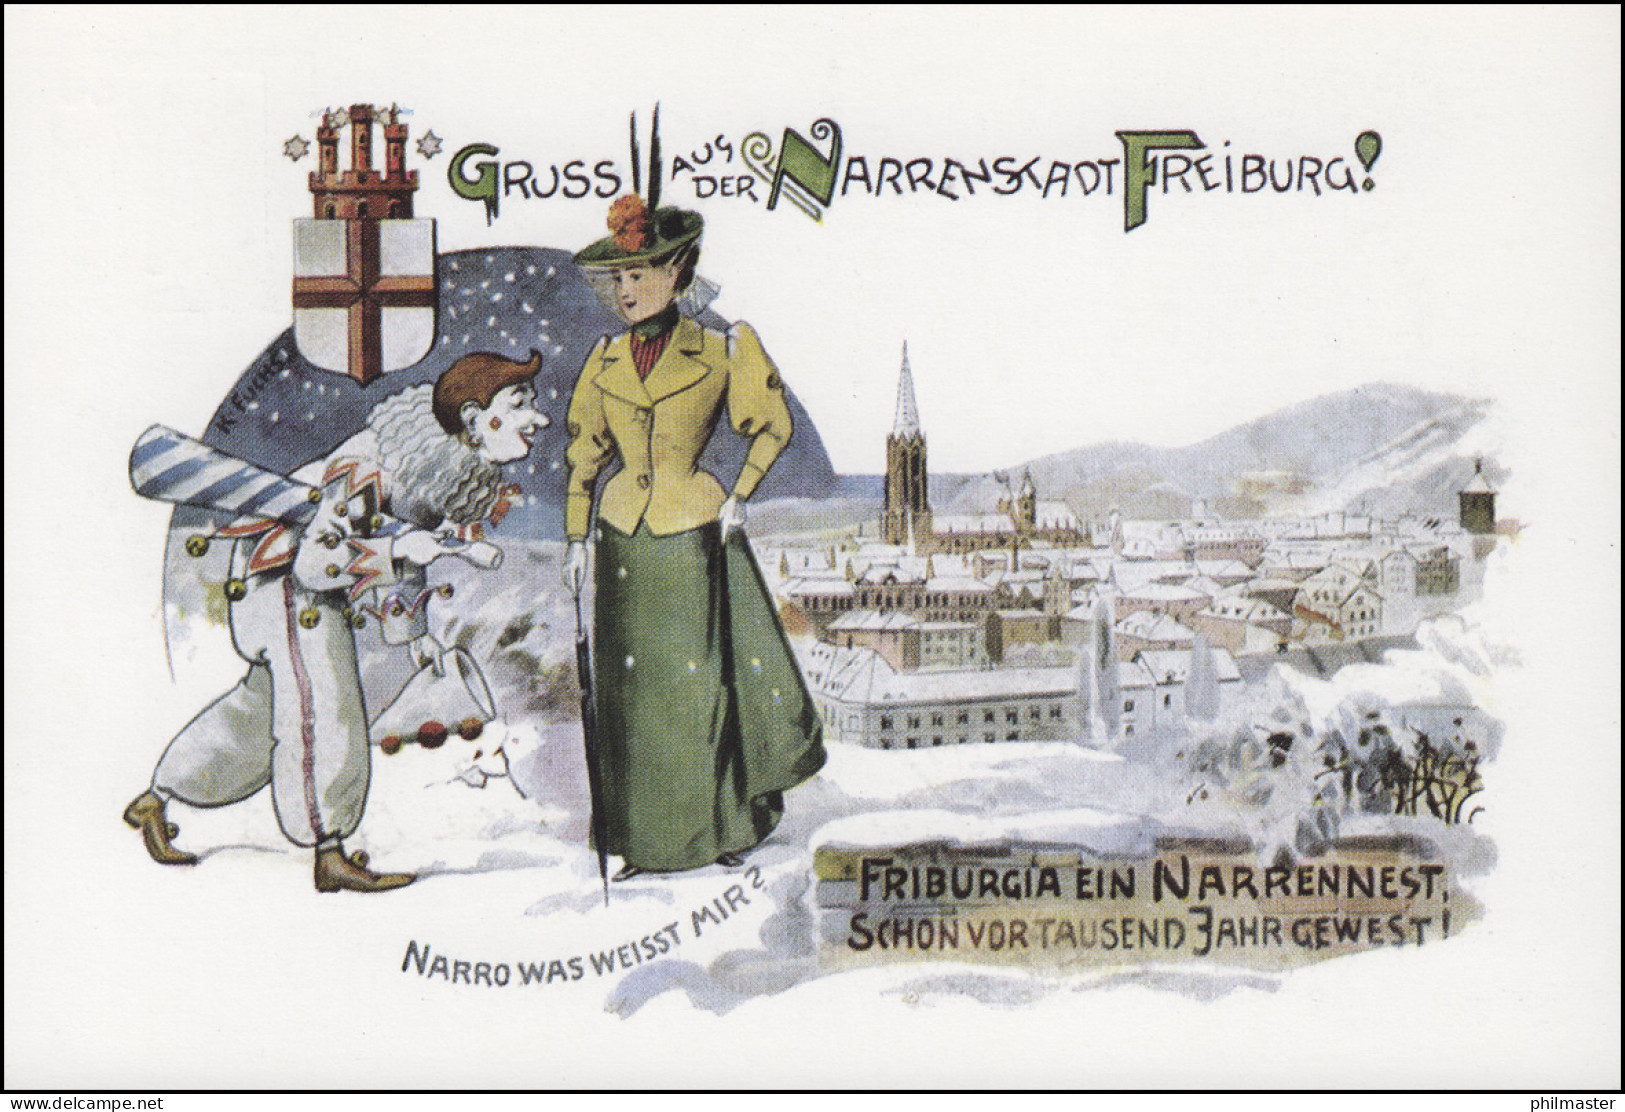 Privatpostkarte PP 103/6 Besuchen Sie Die Narrenschau SSt FREIBURG 14.2.1980 - Private Covers - Mint